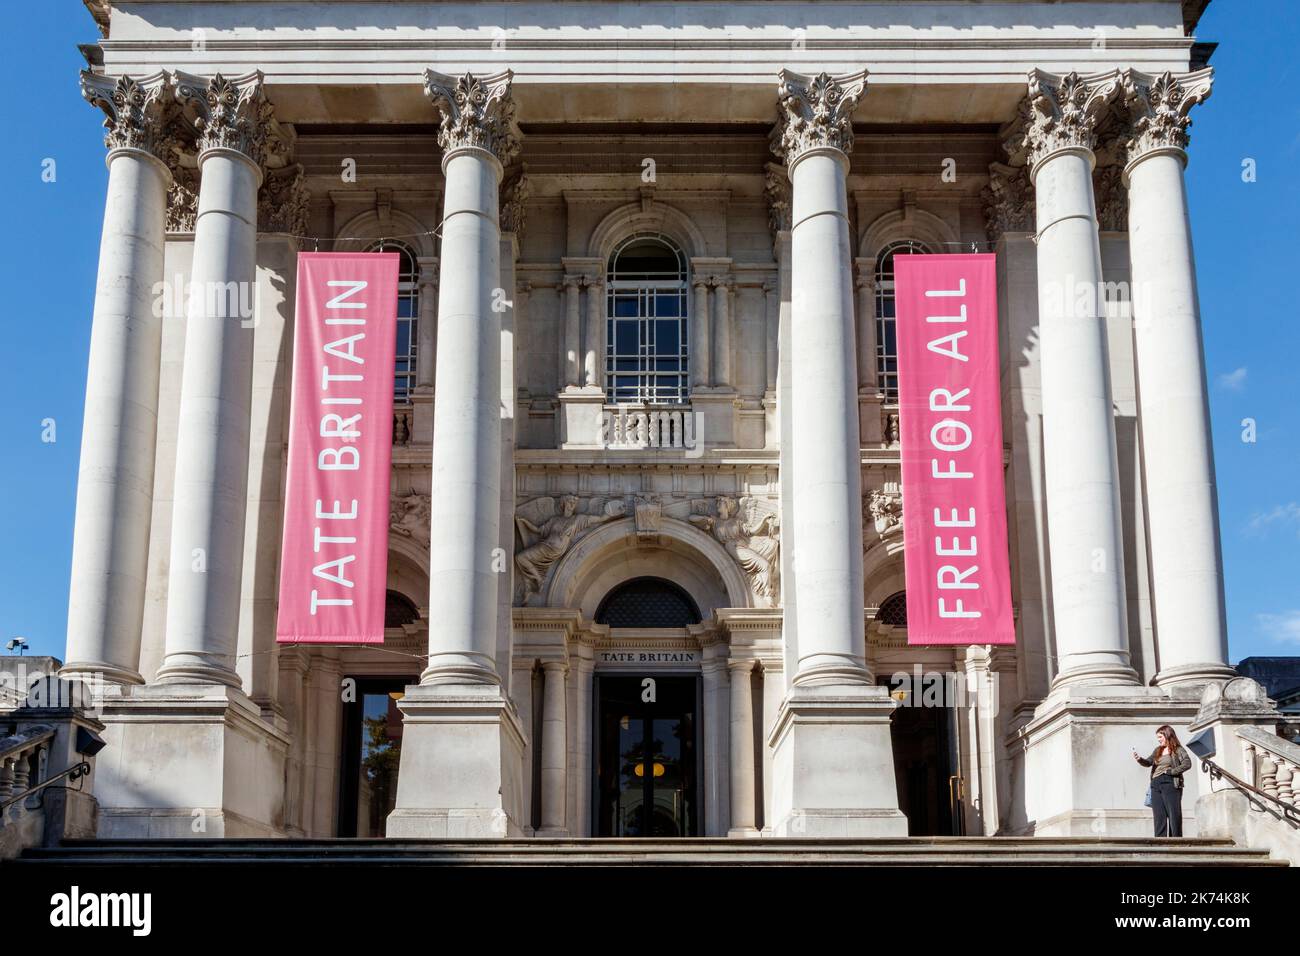 Tate Britain art gallery on Millbank, London, UK Stock Photo